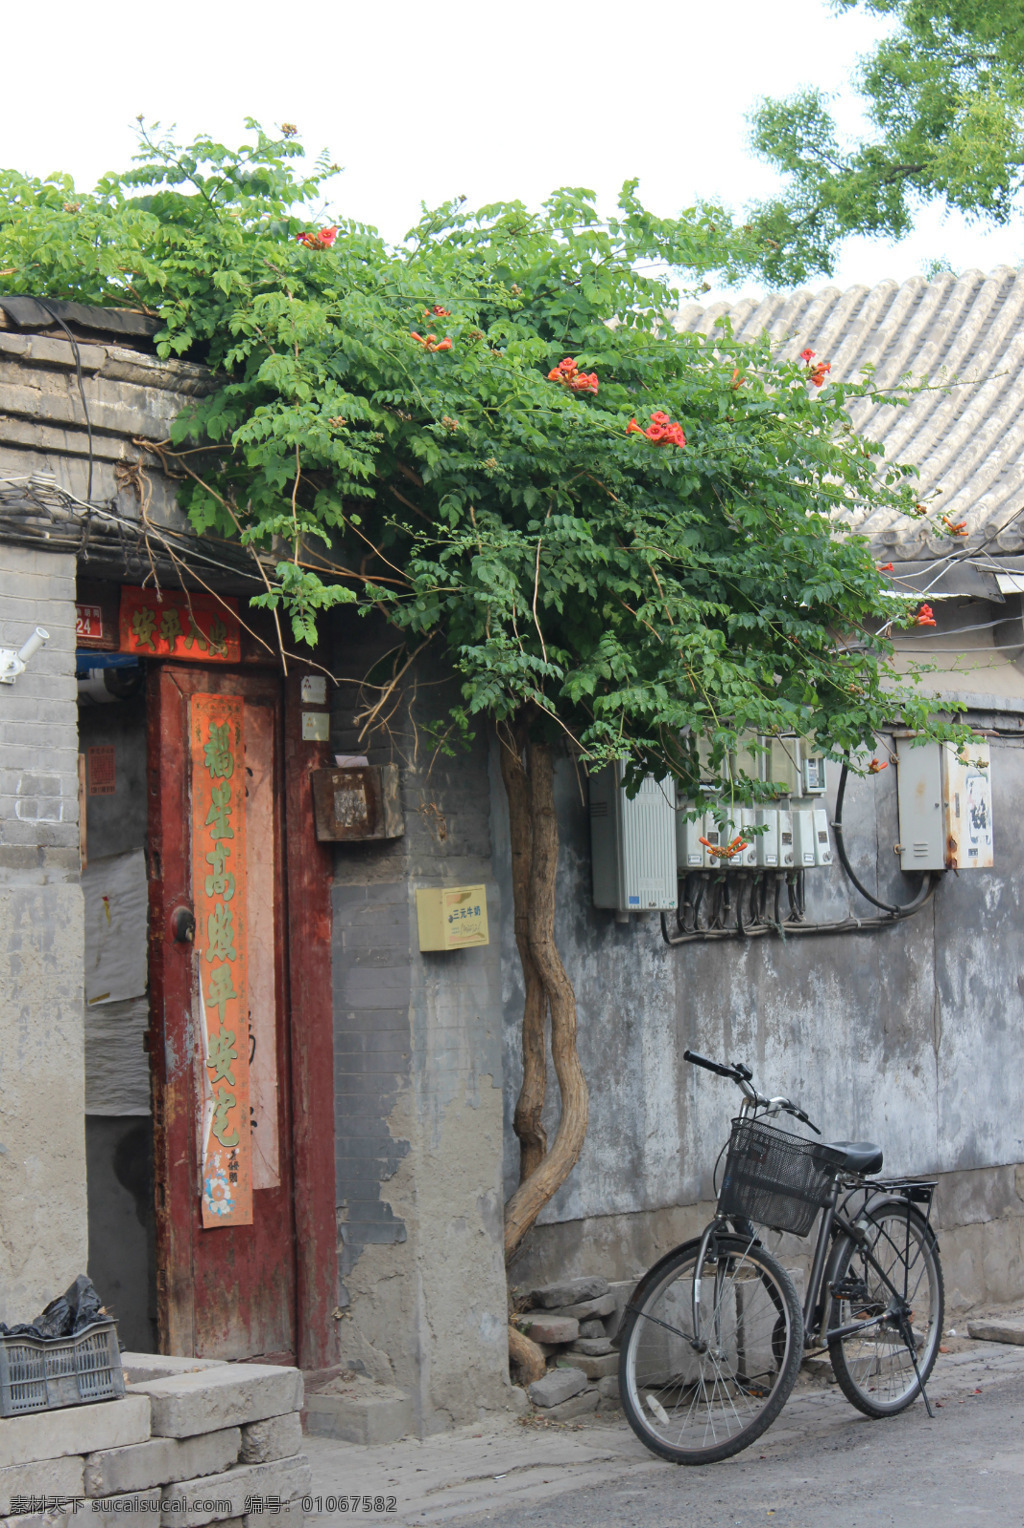 北京胡同 北京 四合院 植物 老式自行车 大红门 旅游摄影 国内旅游